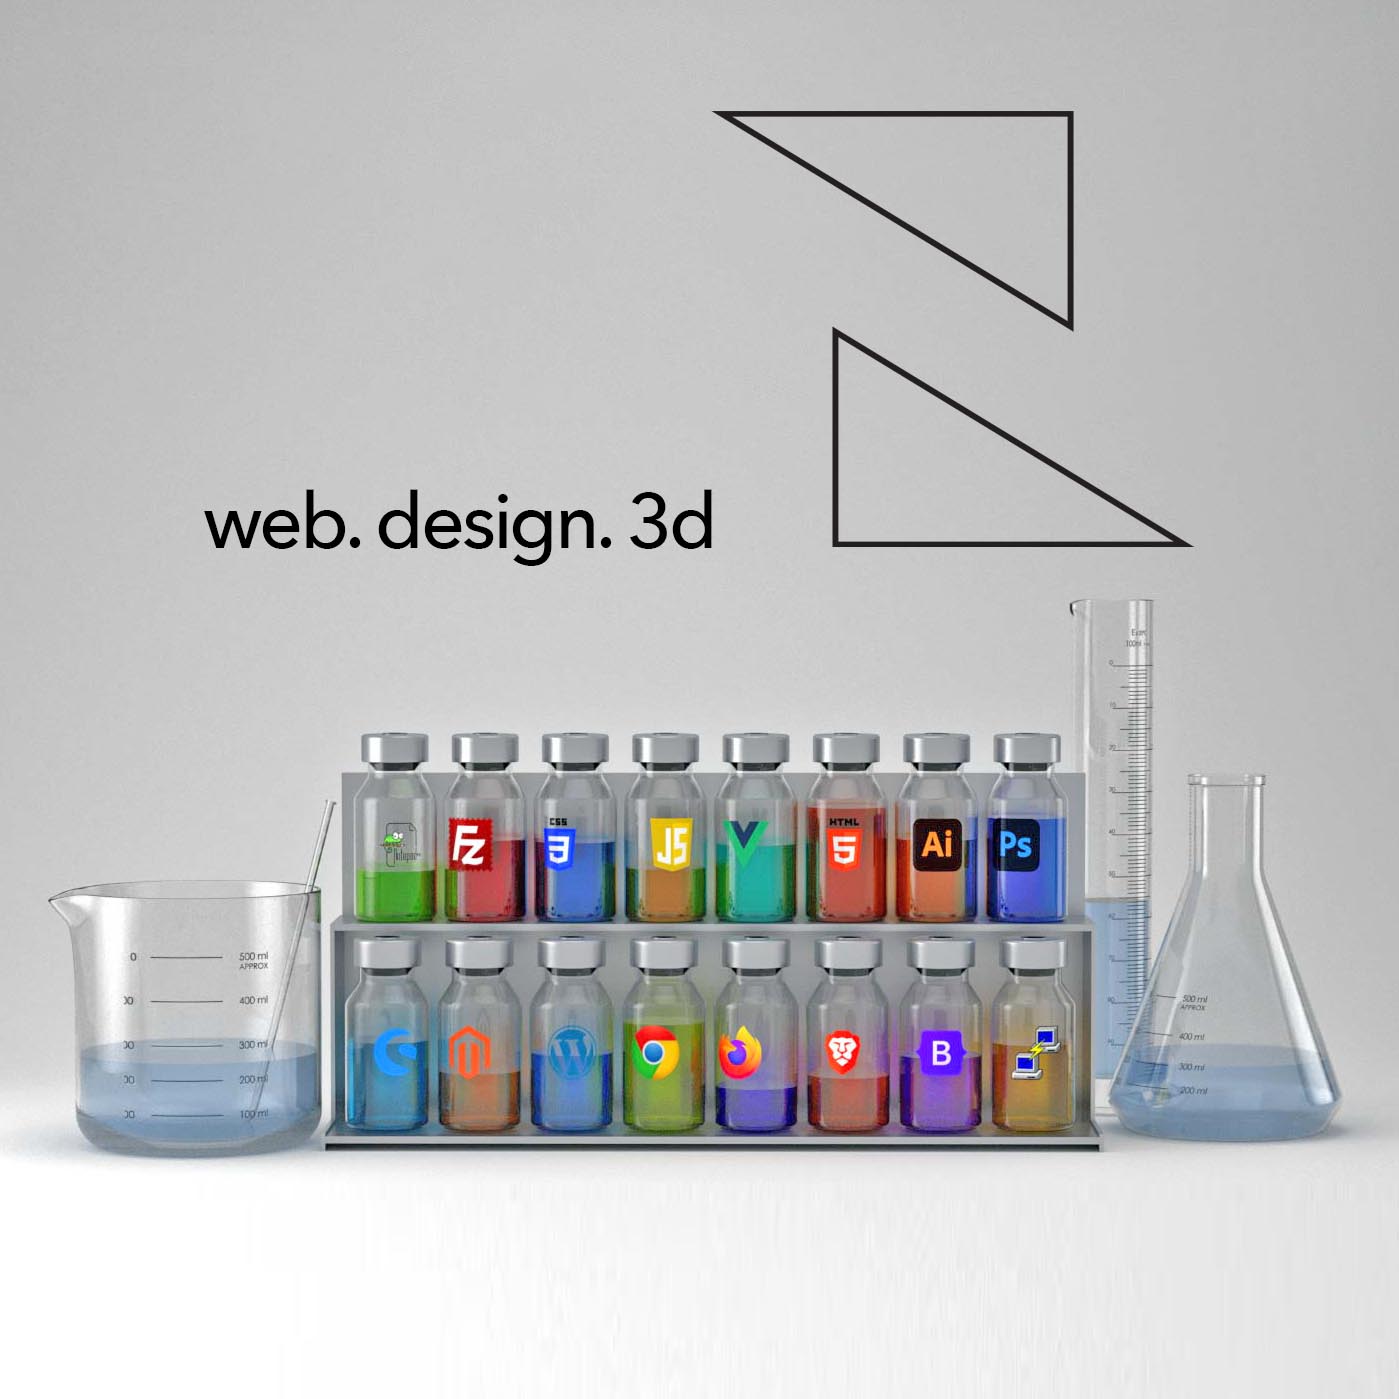 webdesigner-finden-webdesign-nigel-design-thumb